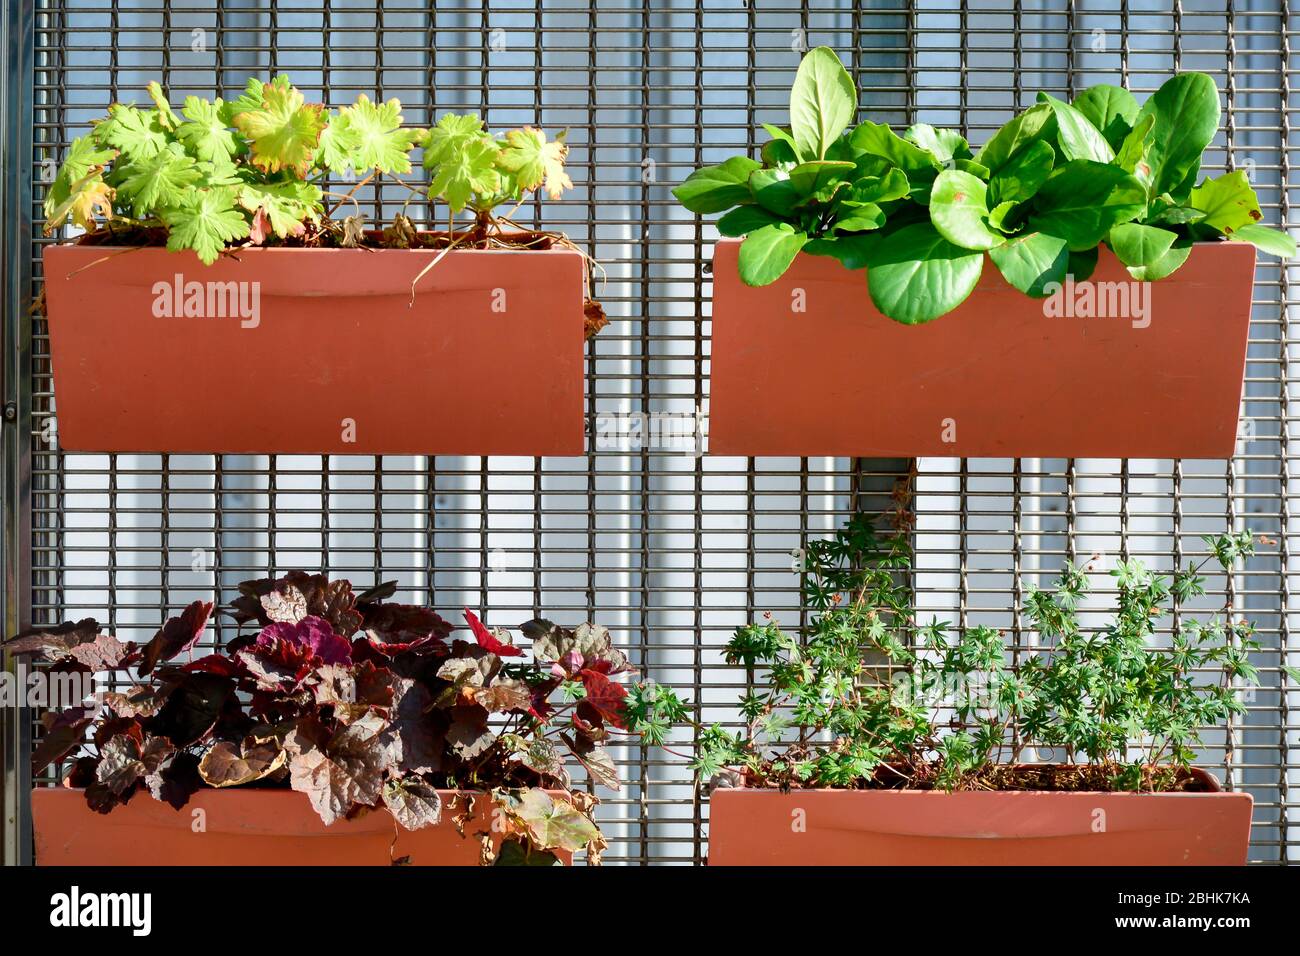 Piantatrici attaccate ad una recinzione. Vasi di fiori d'arancio con piante diverse. Piante piantate in contenitori, giardino verticale idea. Foto Stock